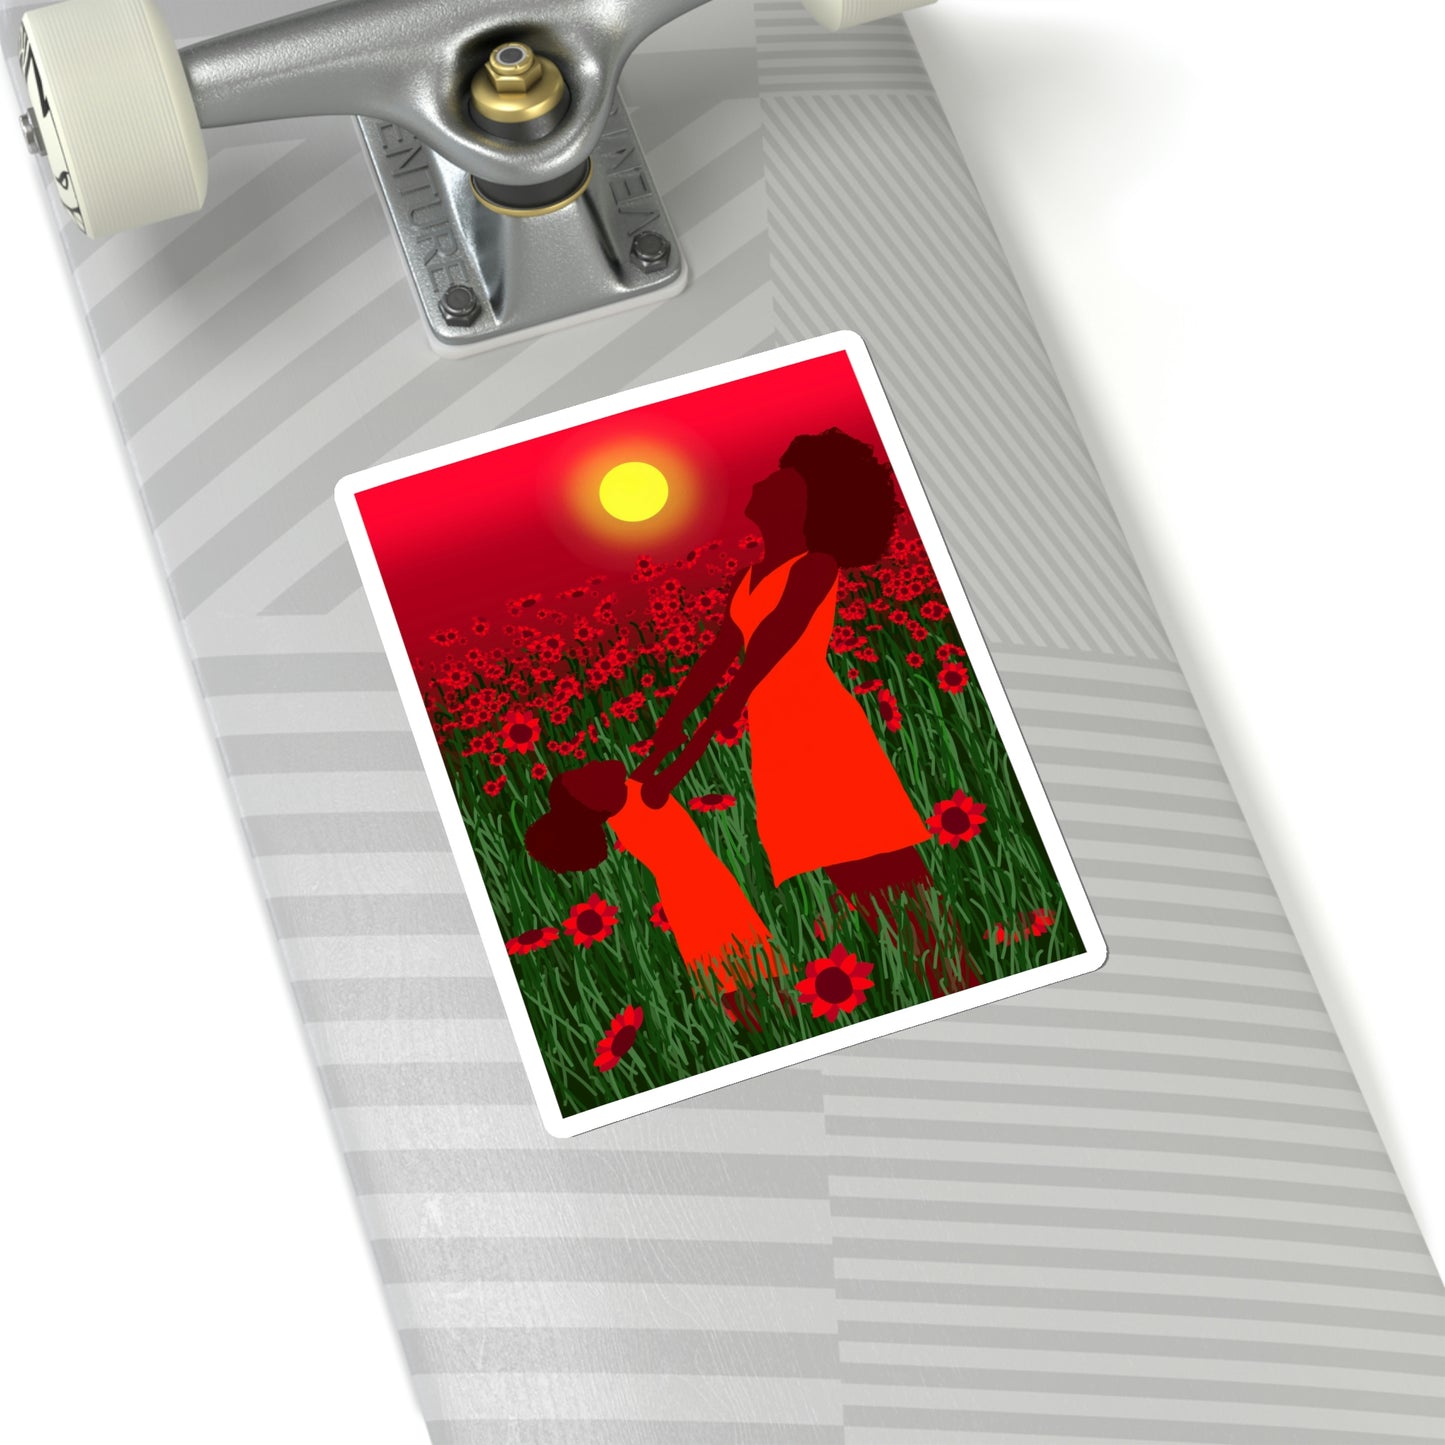 Red Joy Kiss-Cut Sticker